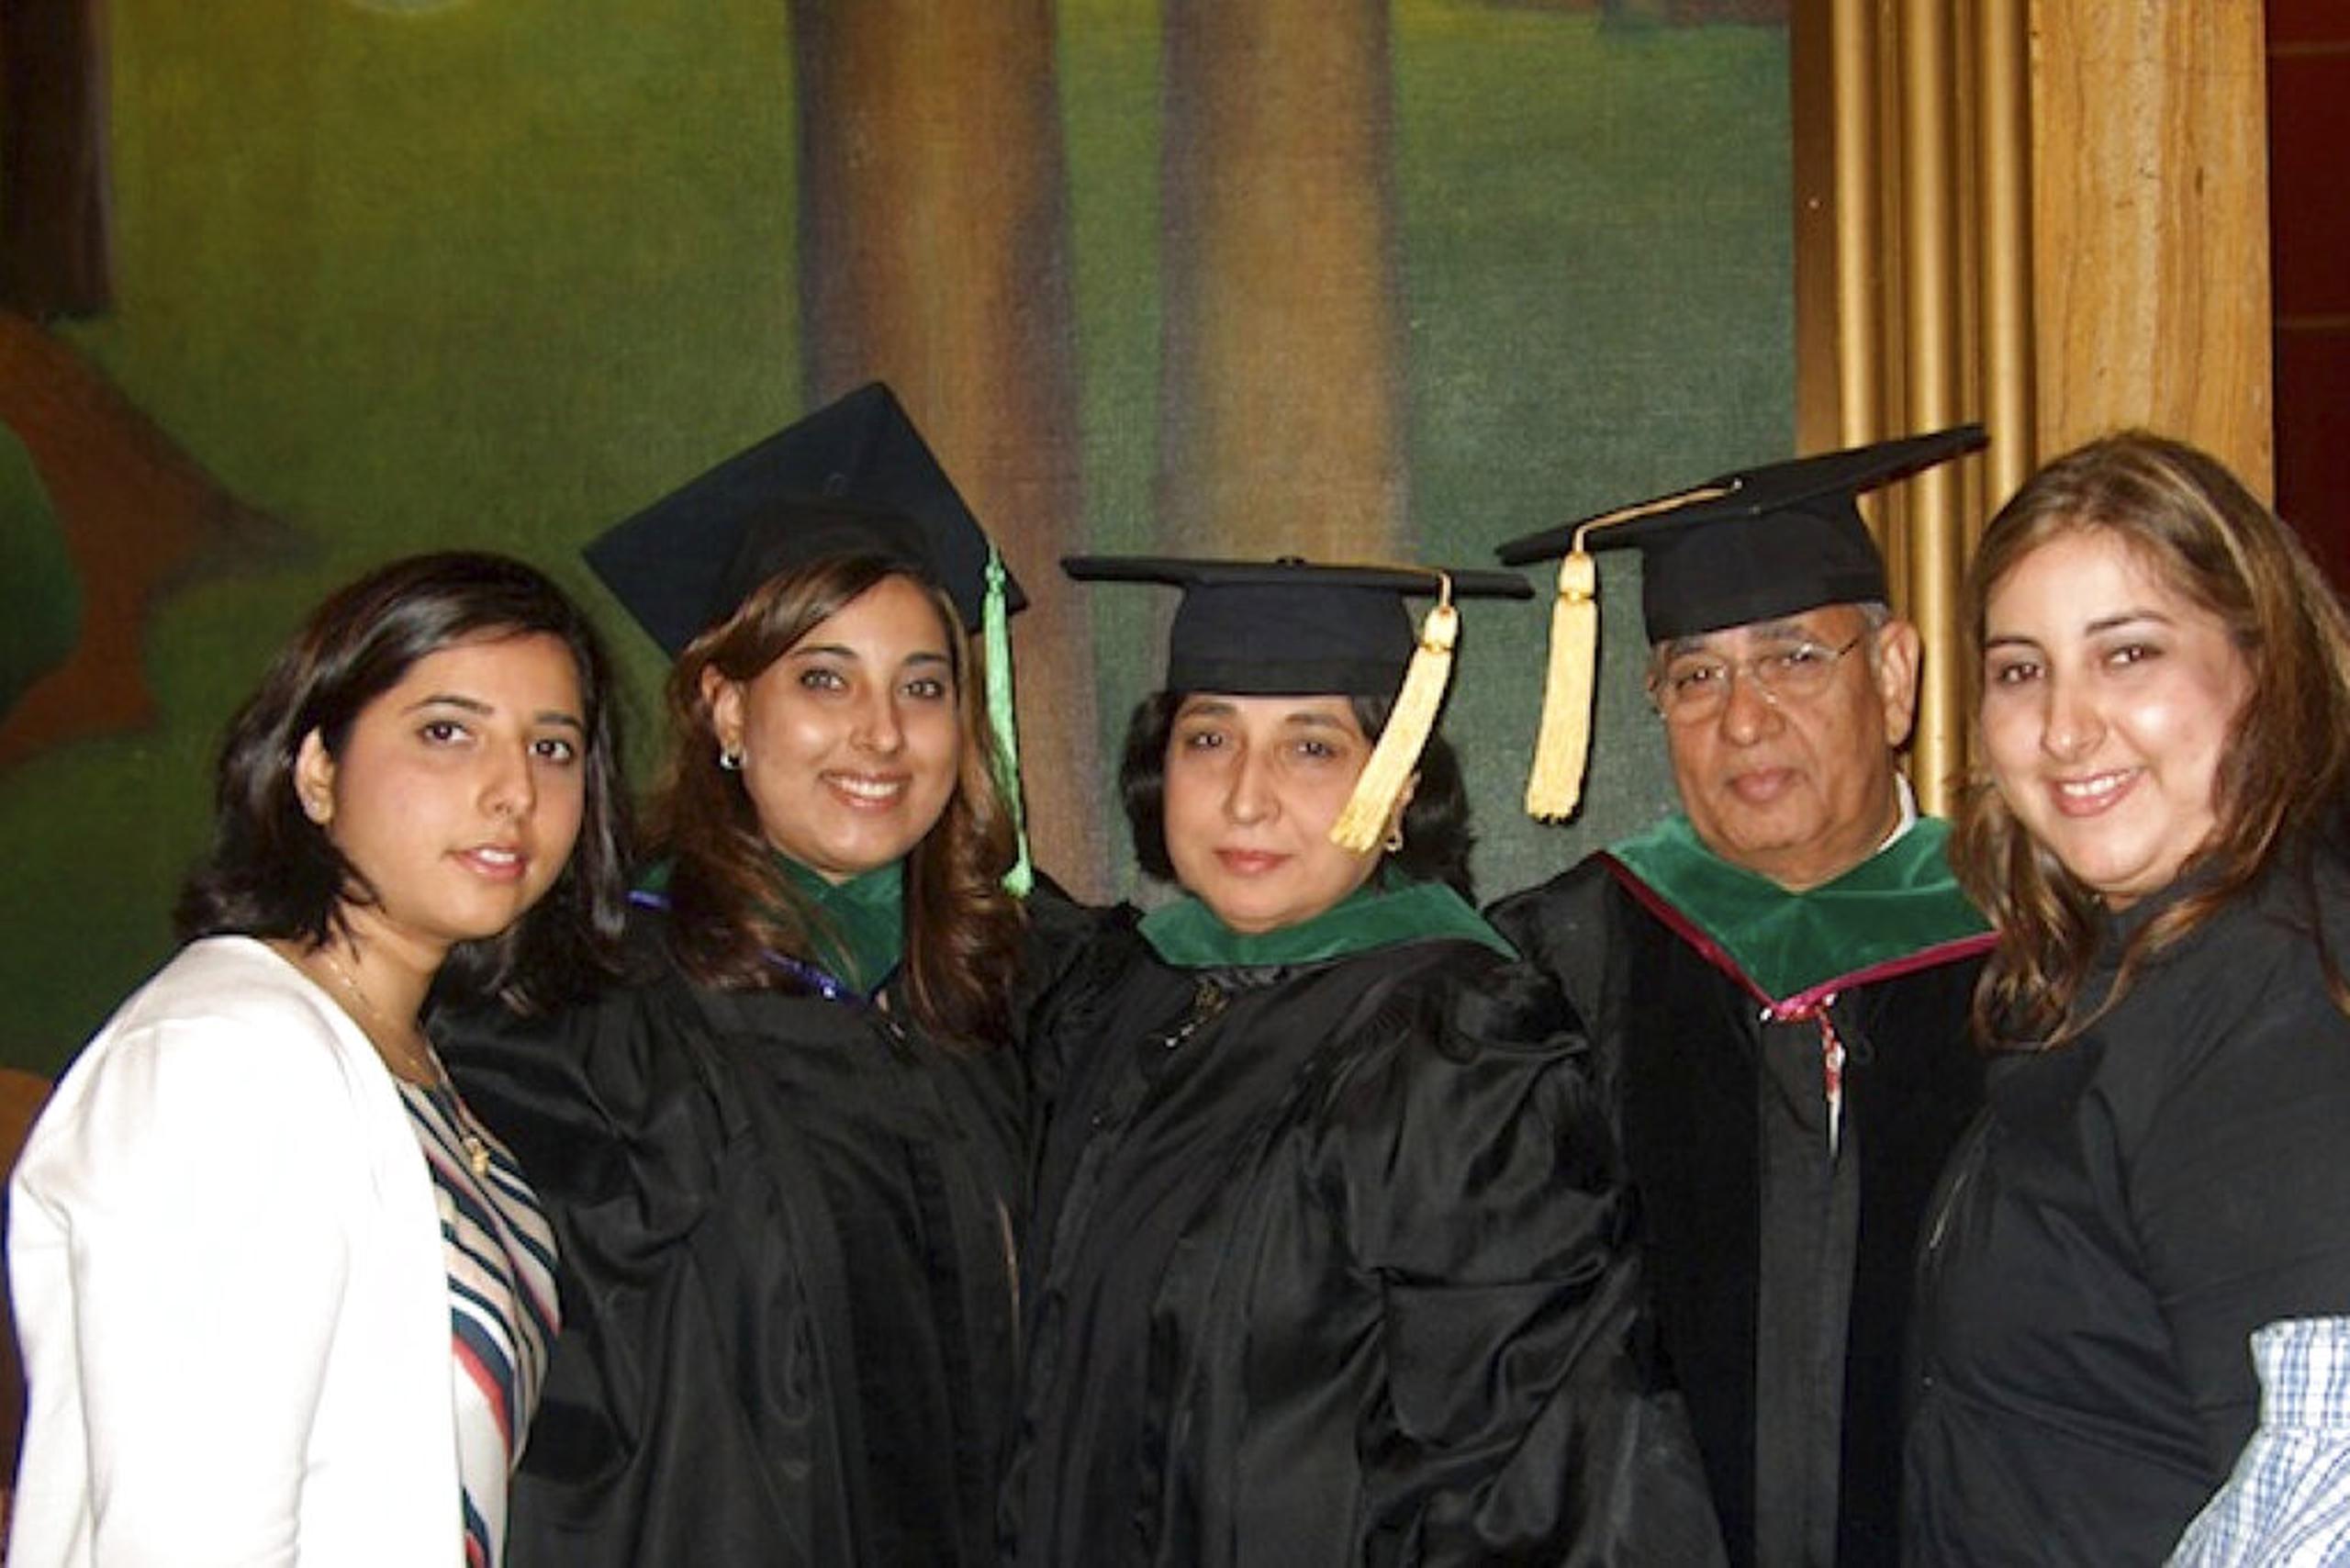 Foto sin fecha de Anisha, Sughanda, Kamlesh, Satyender y Priya Khanna, cinco médicos de una misma familia india radicada en Glen Ridge, Nueva Jersey.